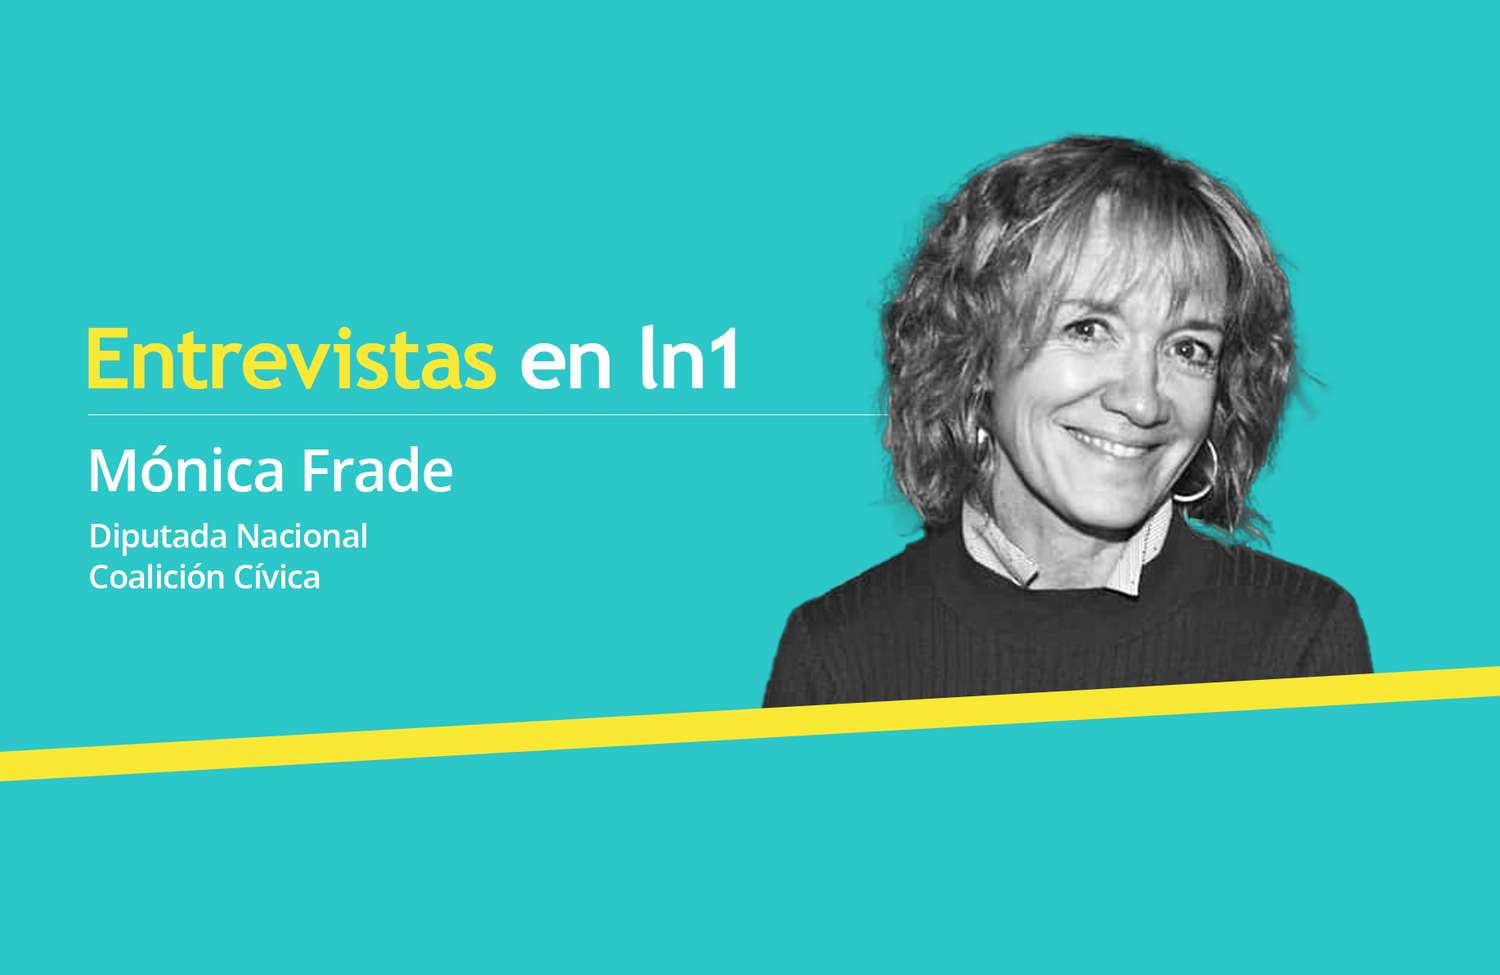 Habló Mónica Frade, la diputada que se vistió de presa en el Congreso: "Vi a un presidente bajo presión y dirigido por Cristina"